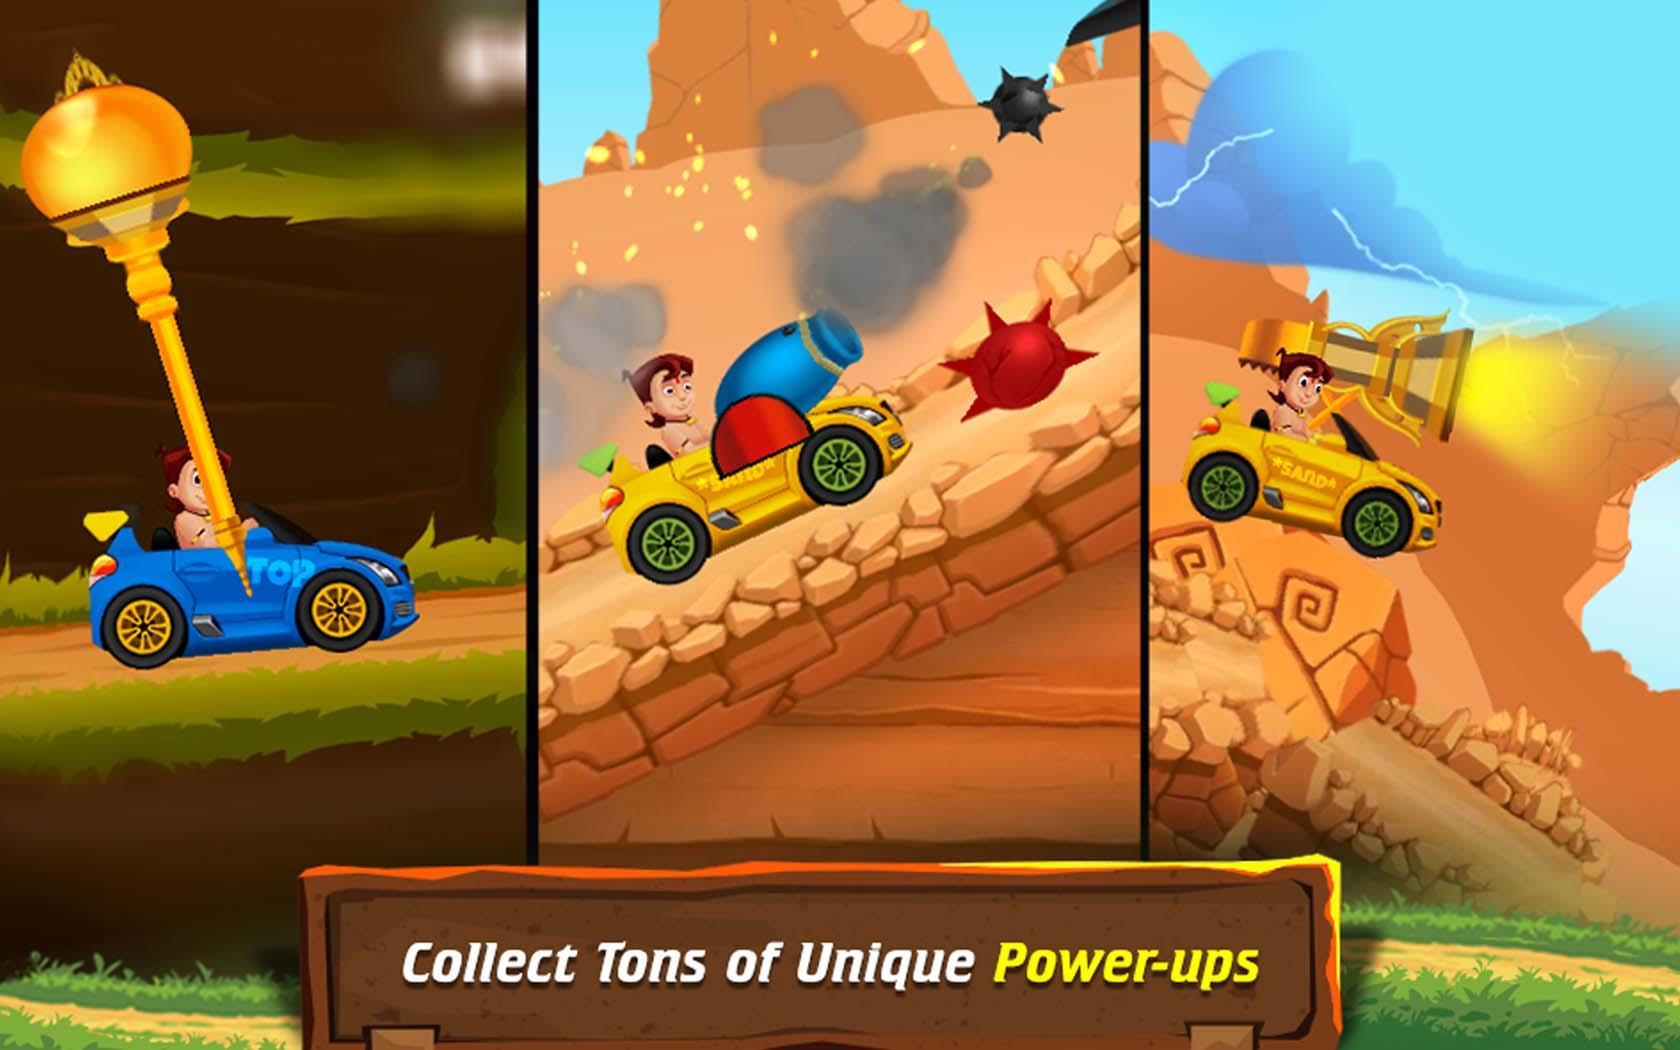 Cartoon Race: Chhota Bheem Speed Racing 게임 스크린 샷